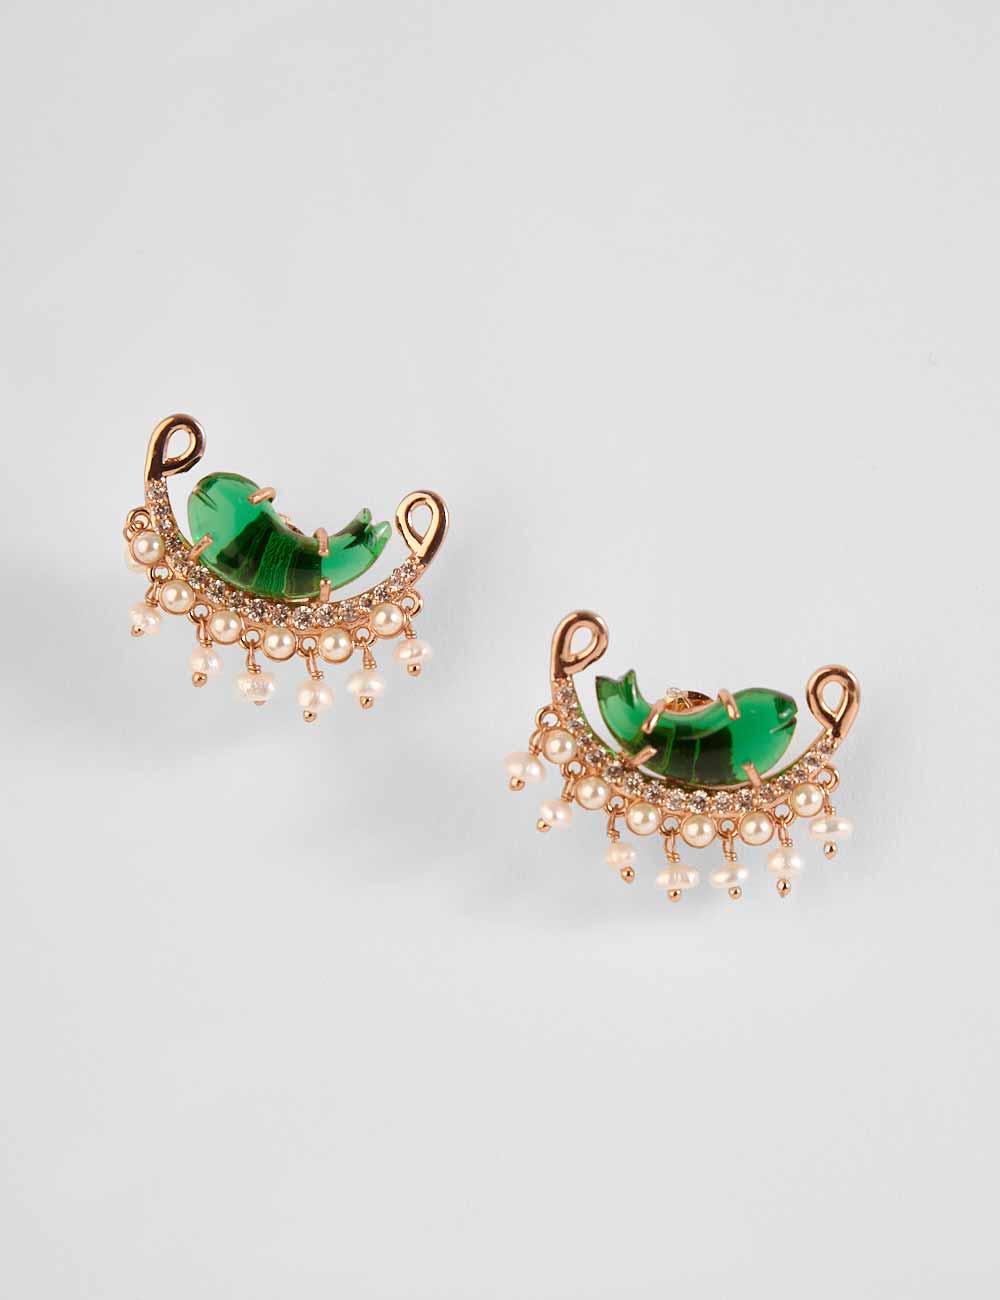 Le Cleo Stud Earrings in jade green